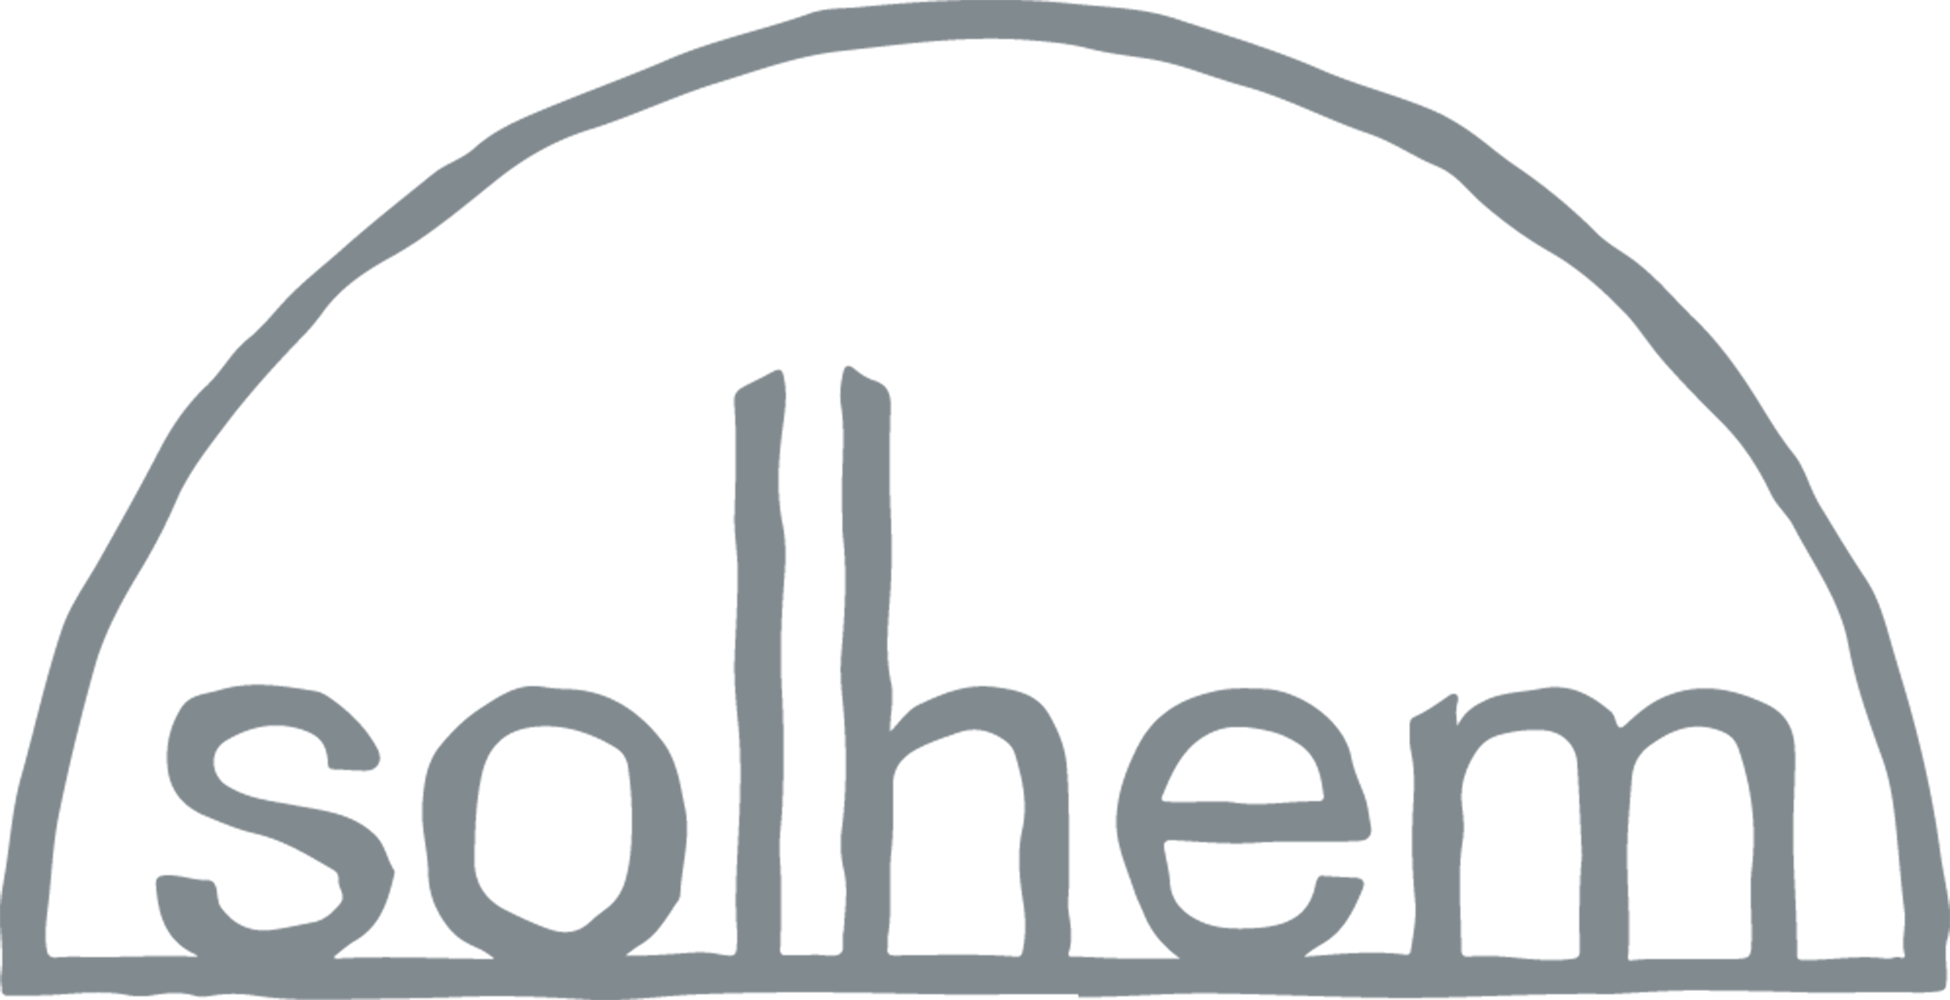 Solhem logo monochrome